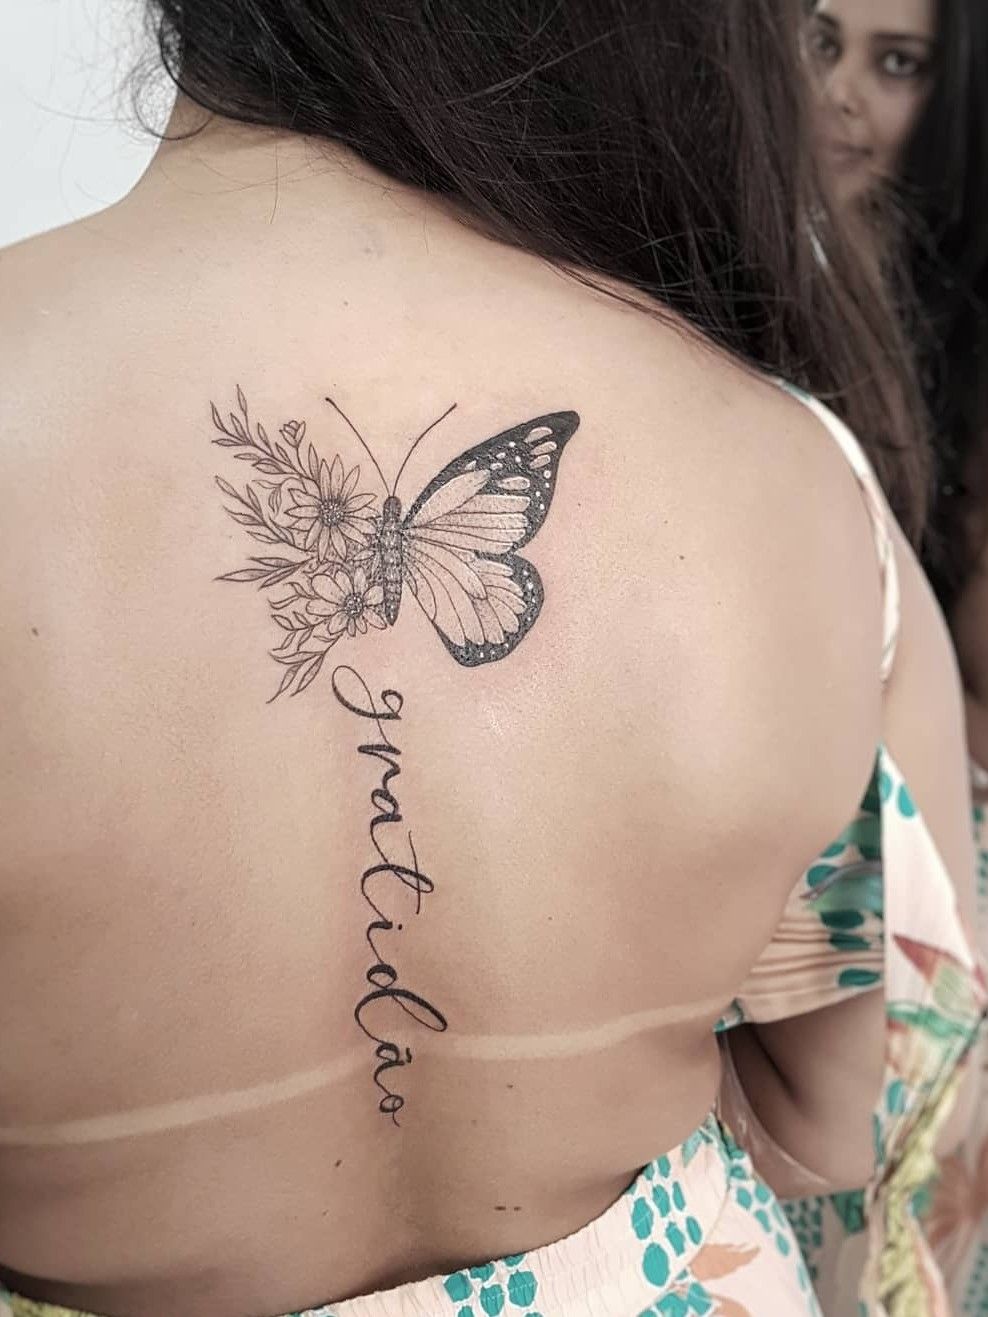 Butterfly sunflower tattoo  Sunflower tattoos Sunflower tattoo Butterfly  with flowers tattoo